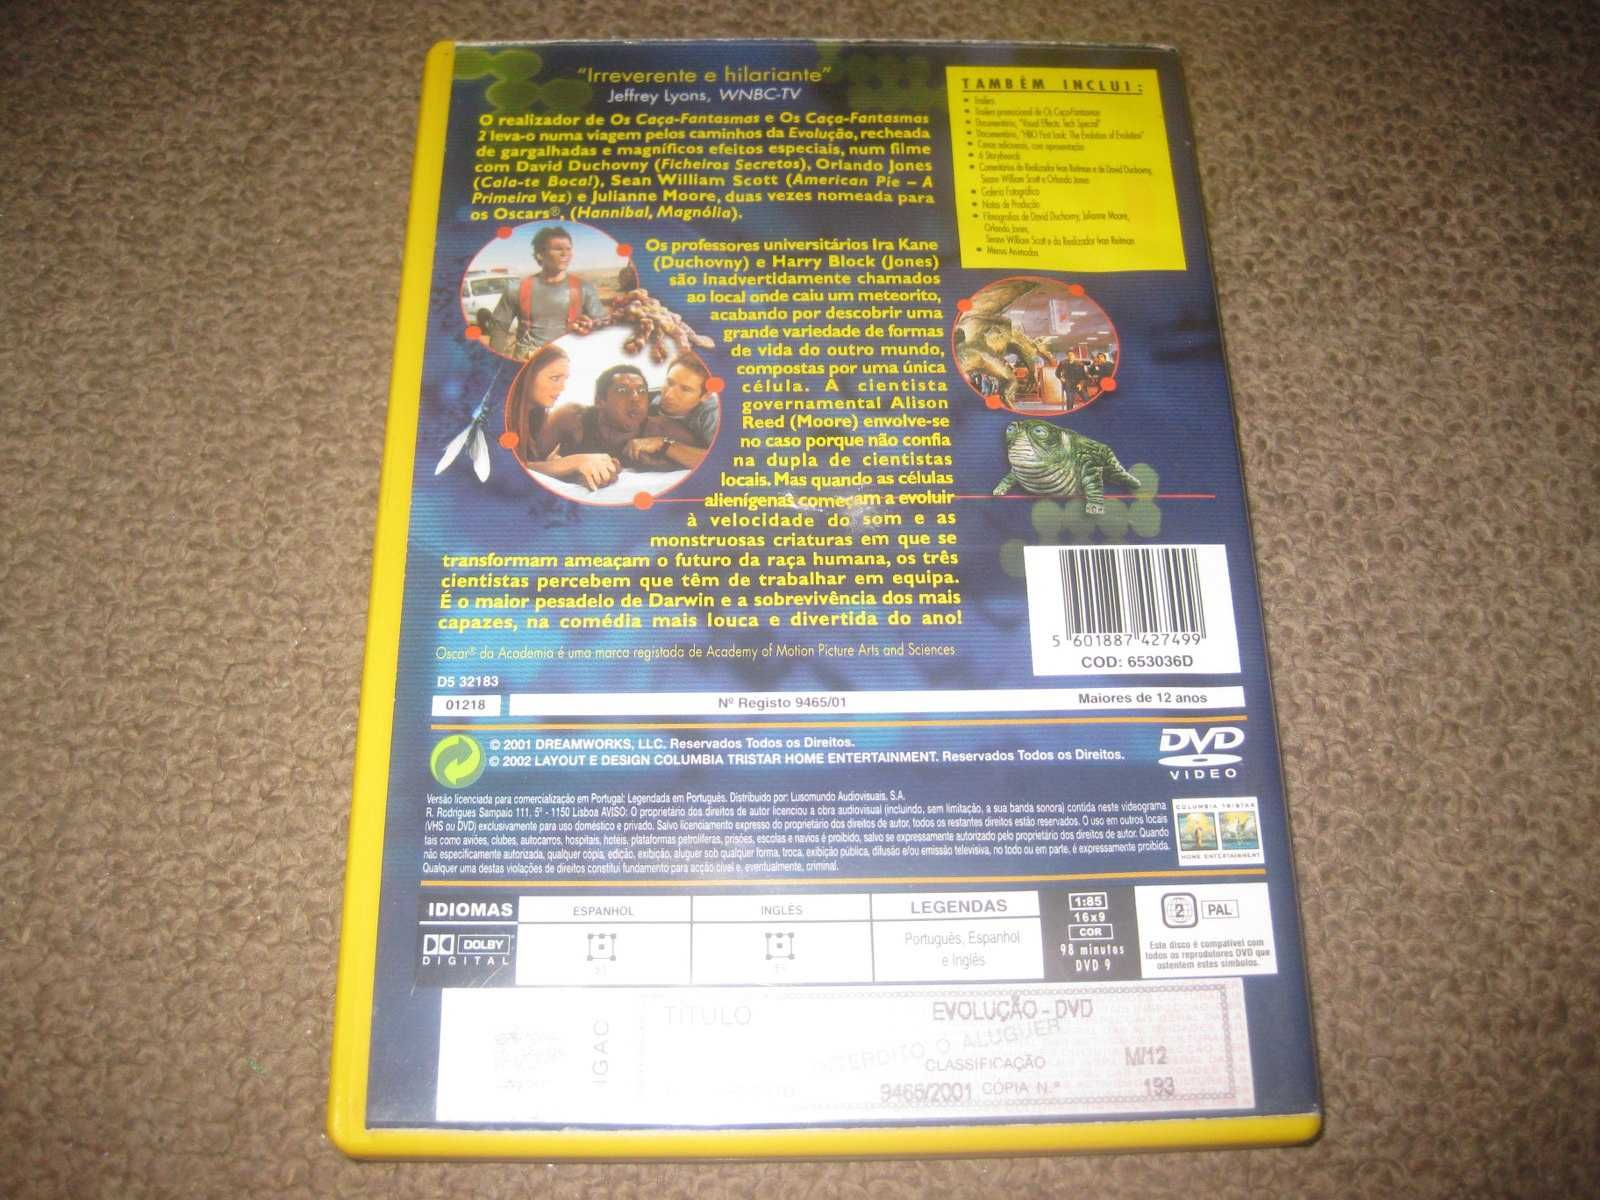 DVD "Evolução" com David Duchovny